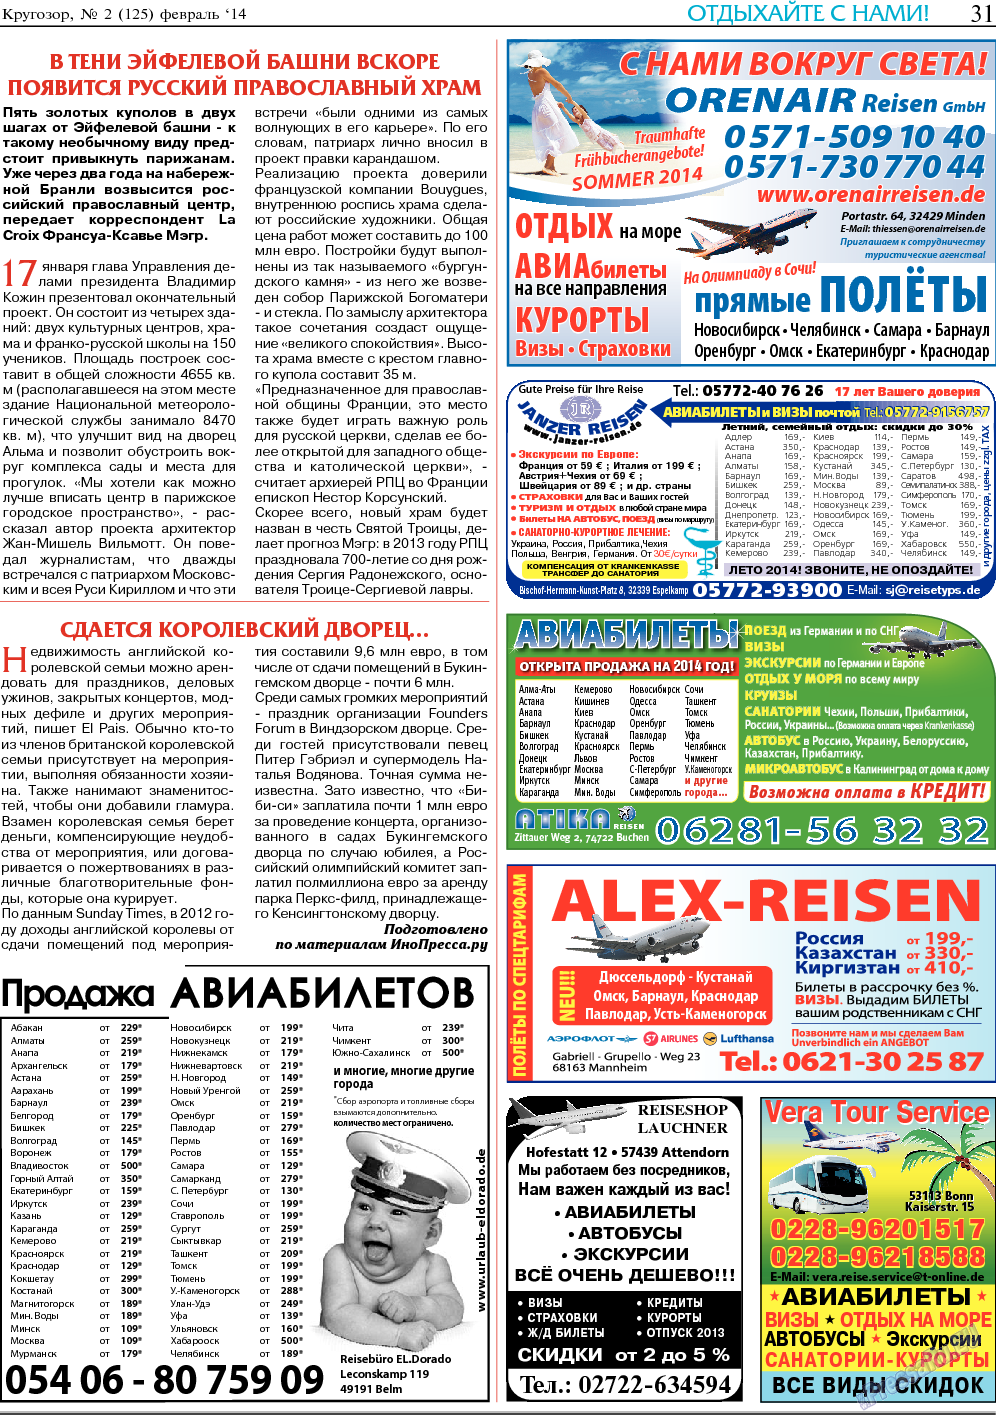 Кругозор, газета. 2014 №2 стр.31